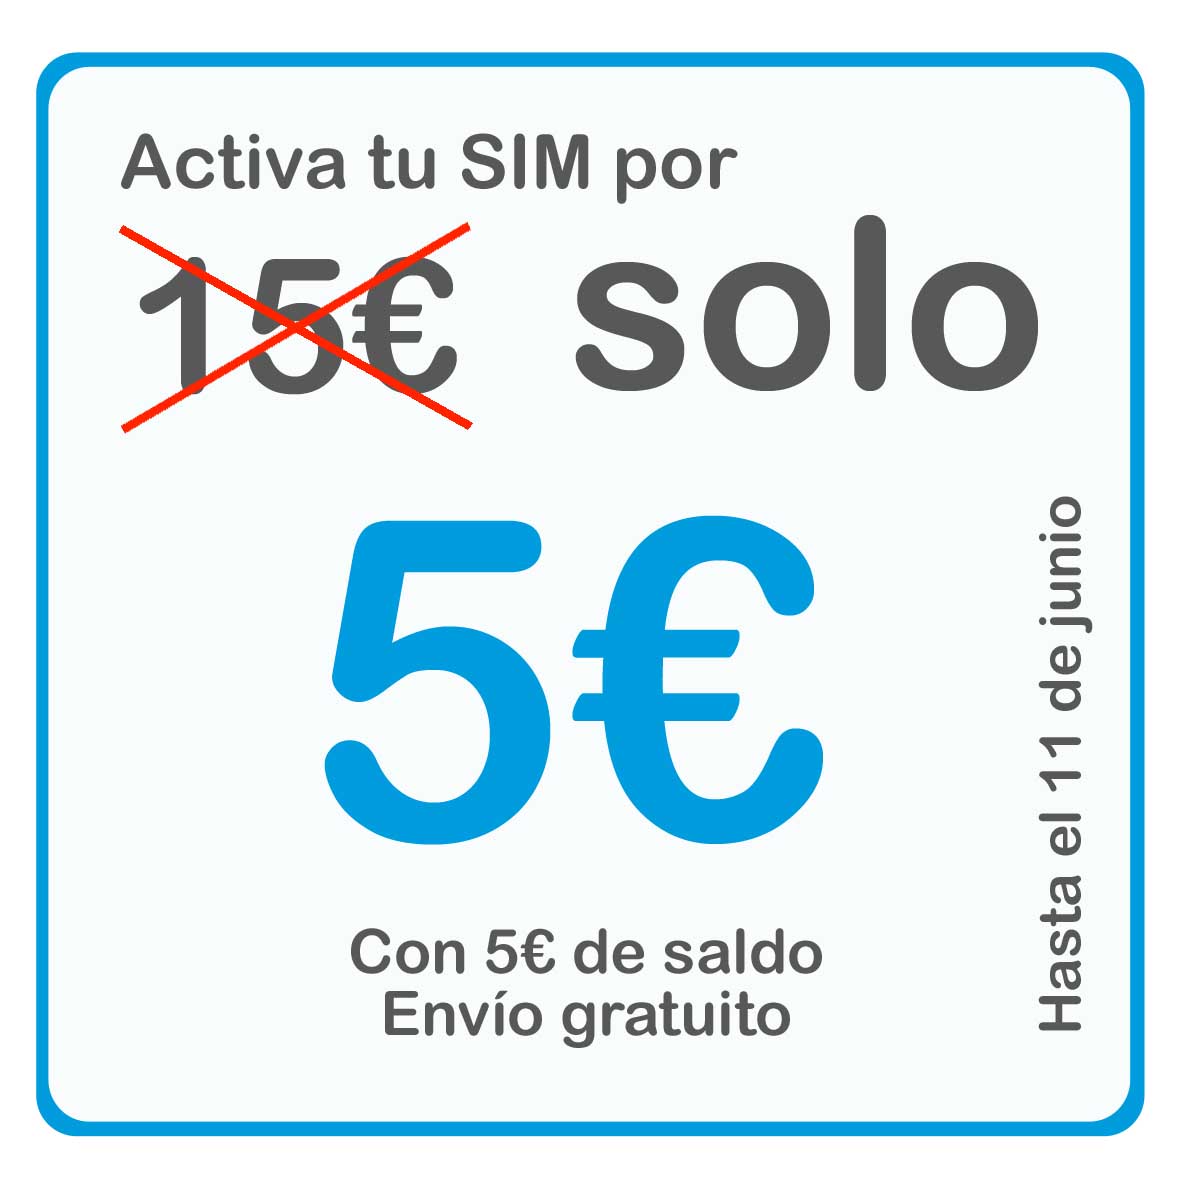 Activa SIM 5€ promocion